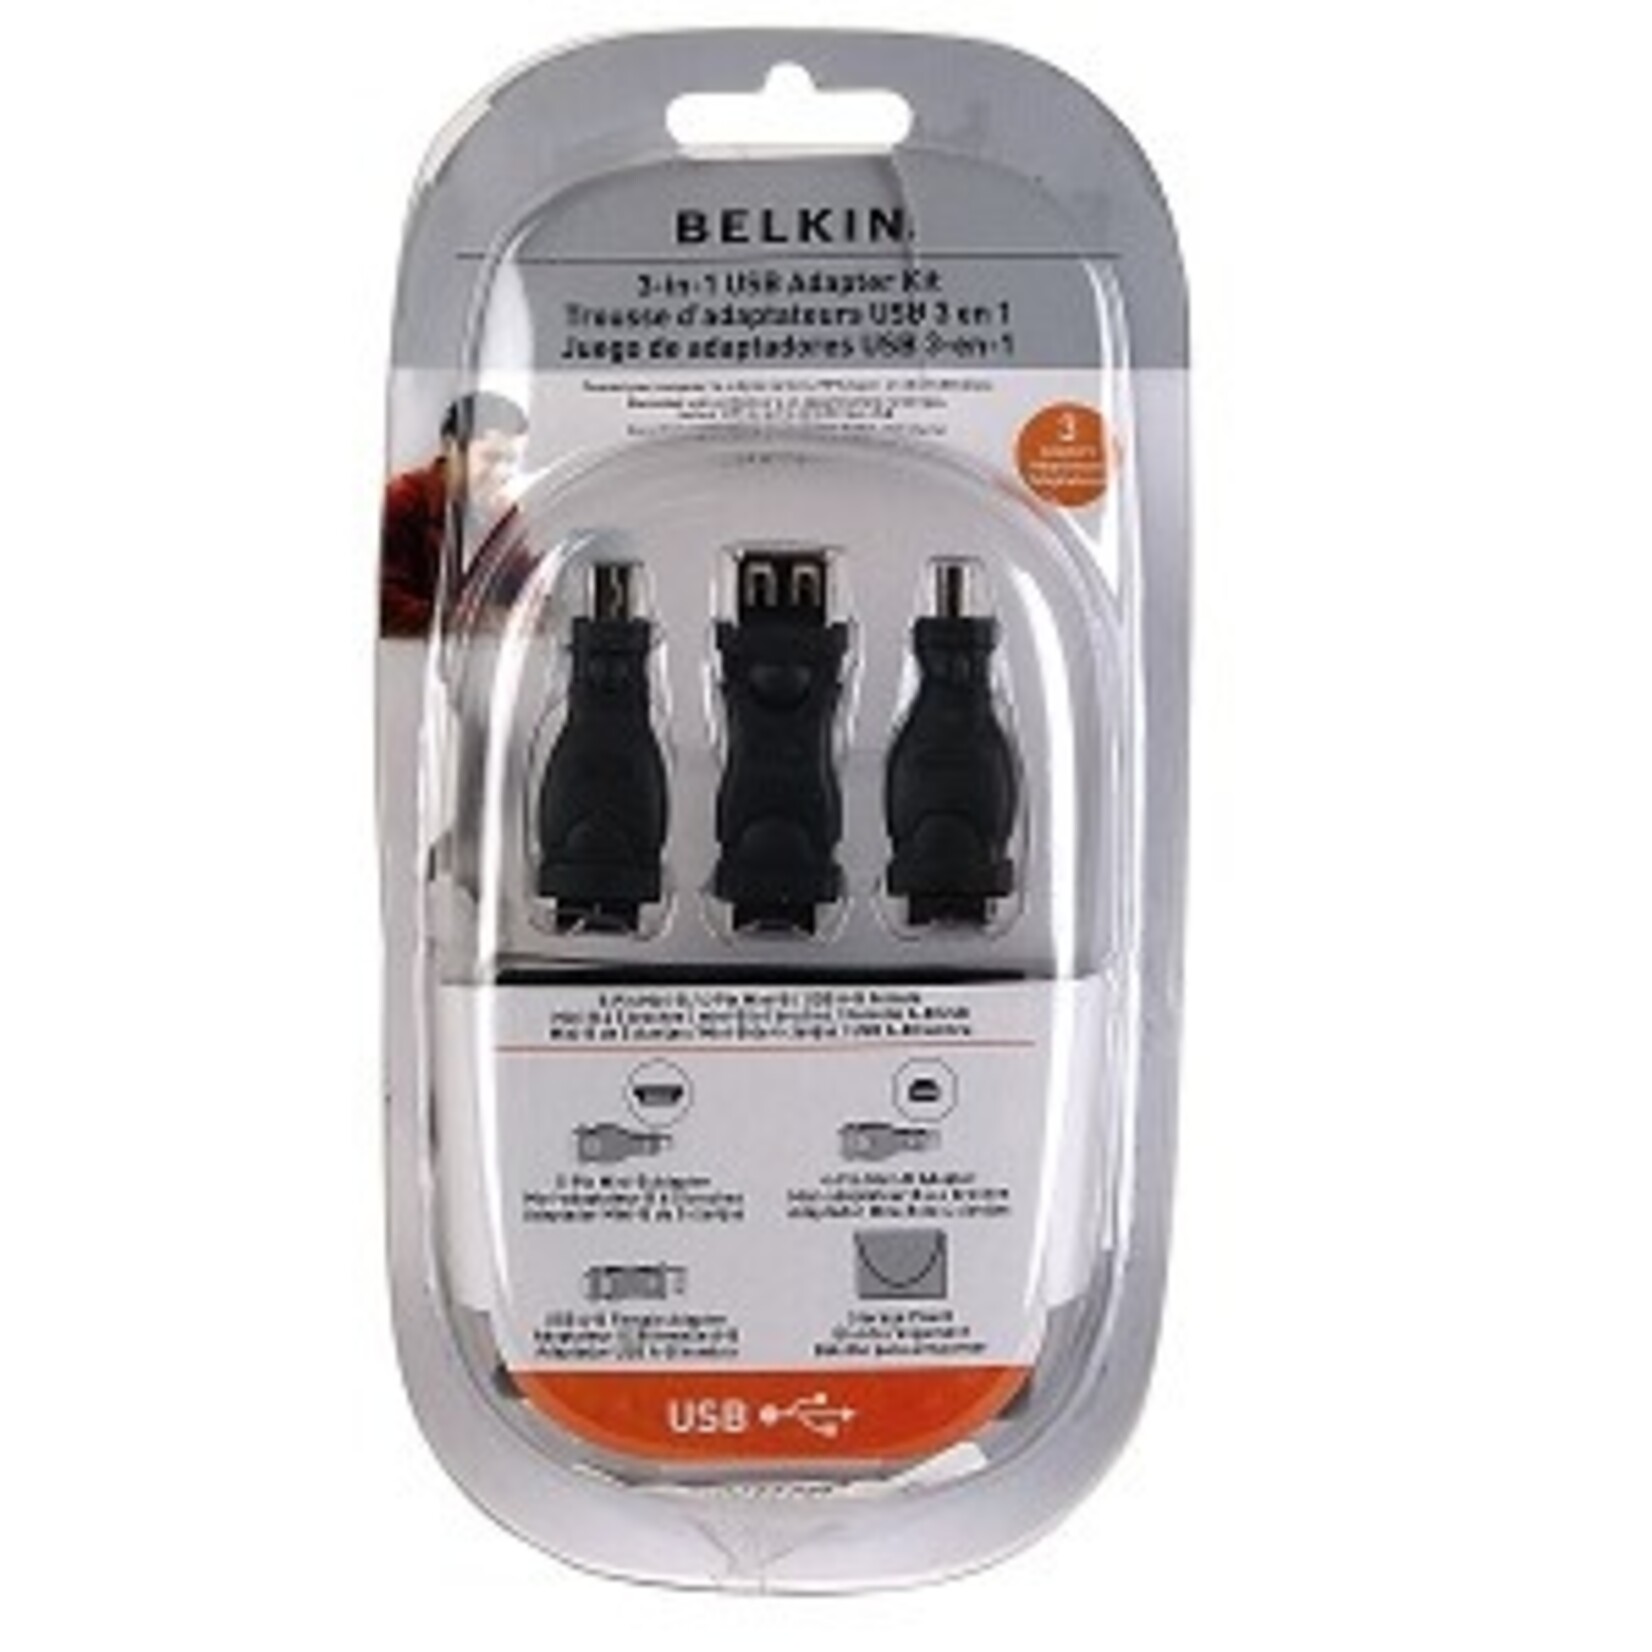 Belkin 3-in-1 USB Adapter